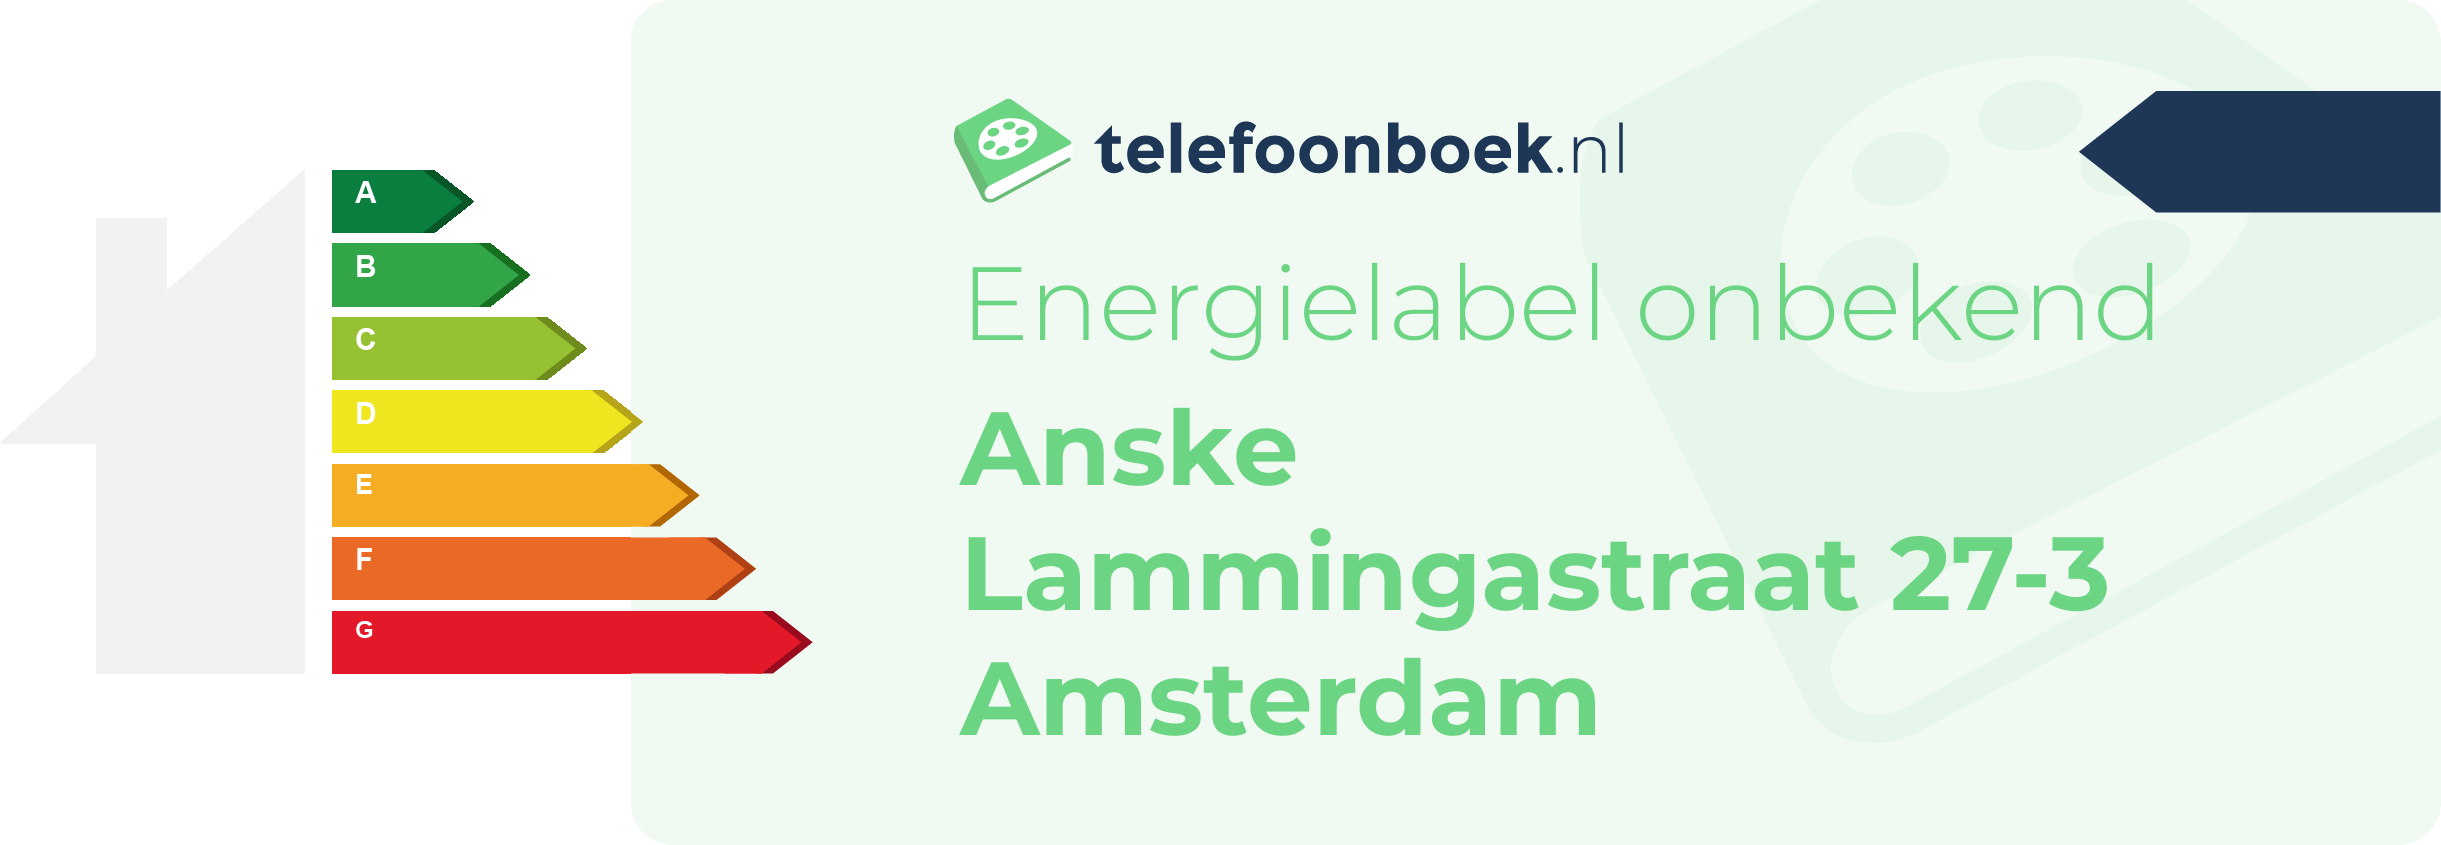 Energielabel Anske Lammingastraat 27-3 Amsterdam